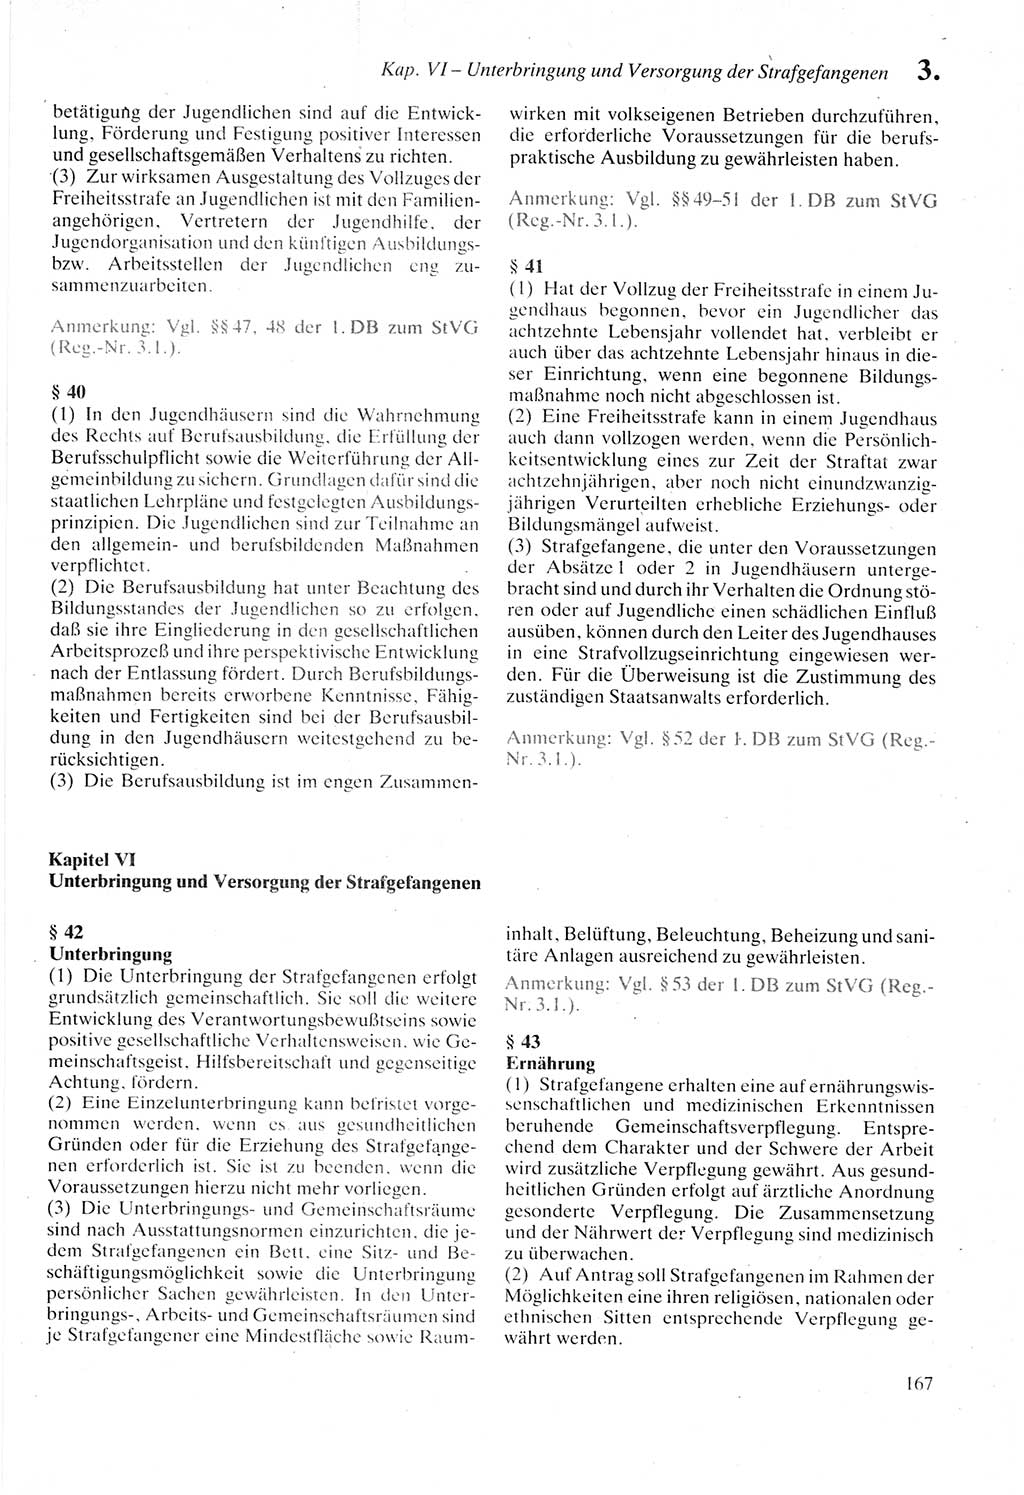 Strafprozeßordnung (StPO) der Deutschen Demokratischen Republik (DDR) sowie angrenzende Gesetze und Bestimmungen 1987, Seite 167 (StPO DDR Ges. Best. 1987, S. 167)